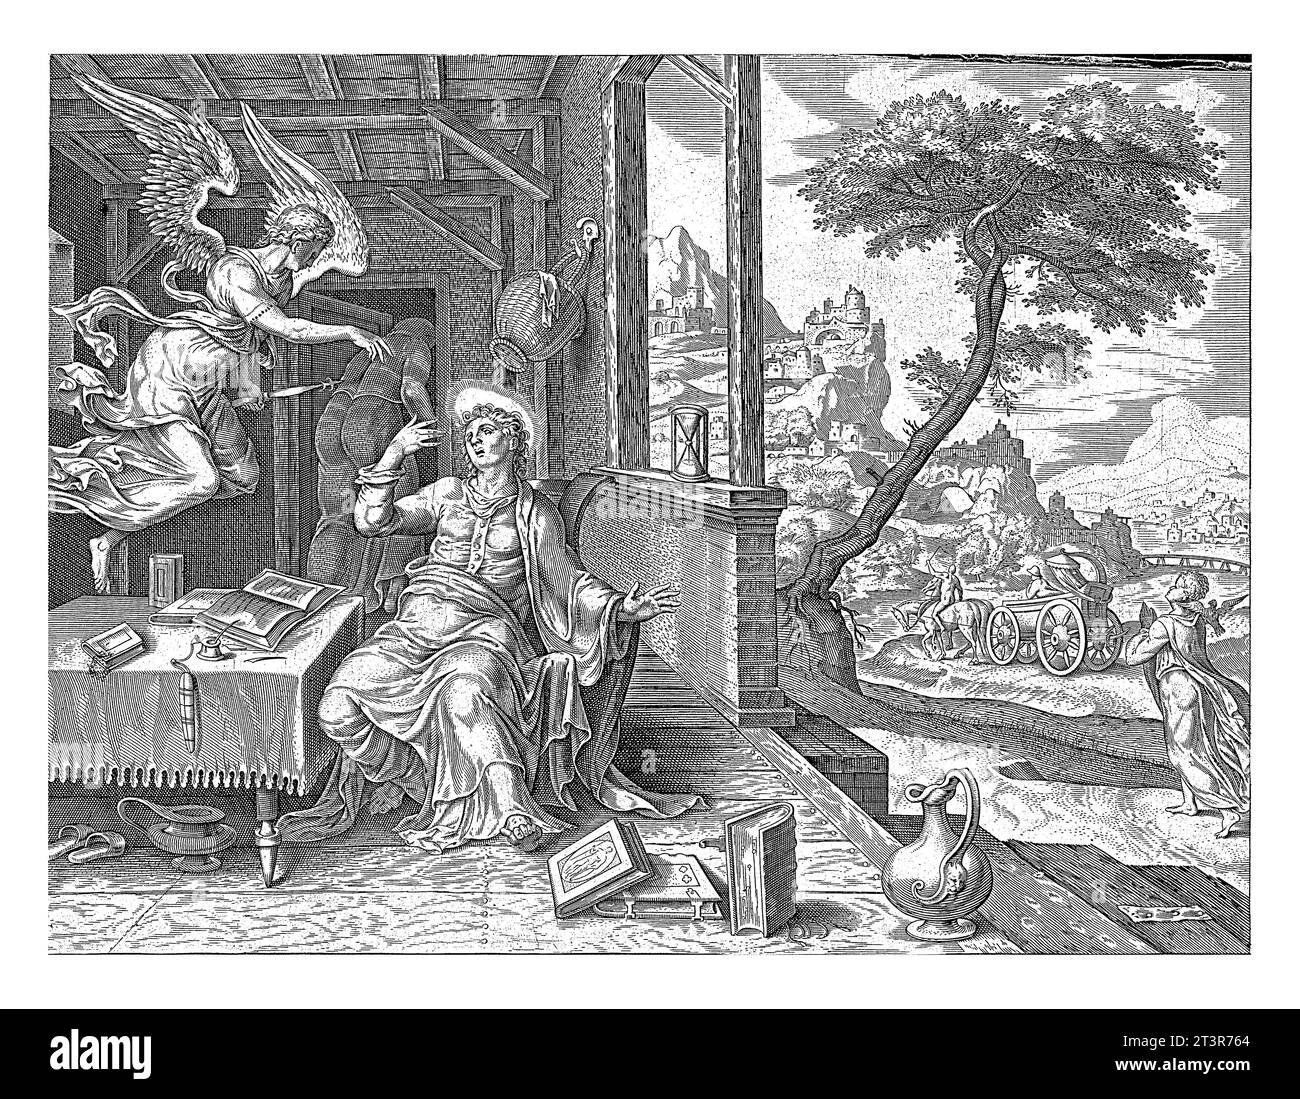 Philippe est envoyé par un ange, anonyme, d'après Philips Galle, d'après Maarten van Heemskerck, 1646 un ange apparaît devant Philippe et envoie l'apôtre à Banque D'Images